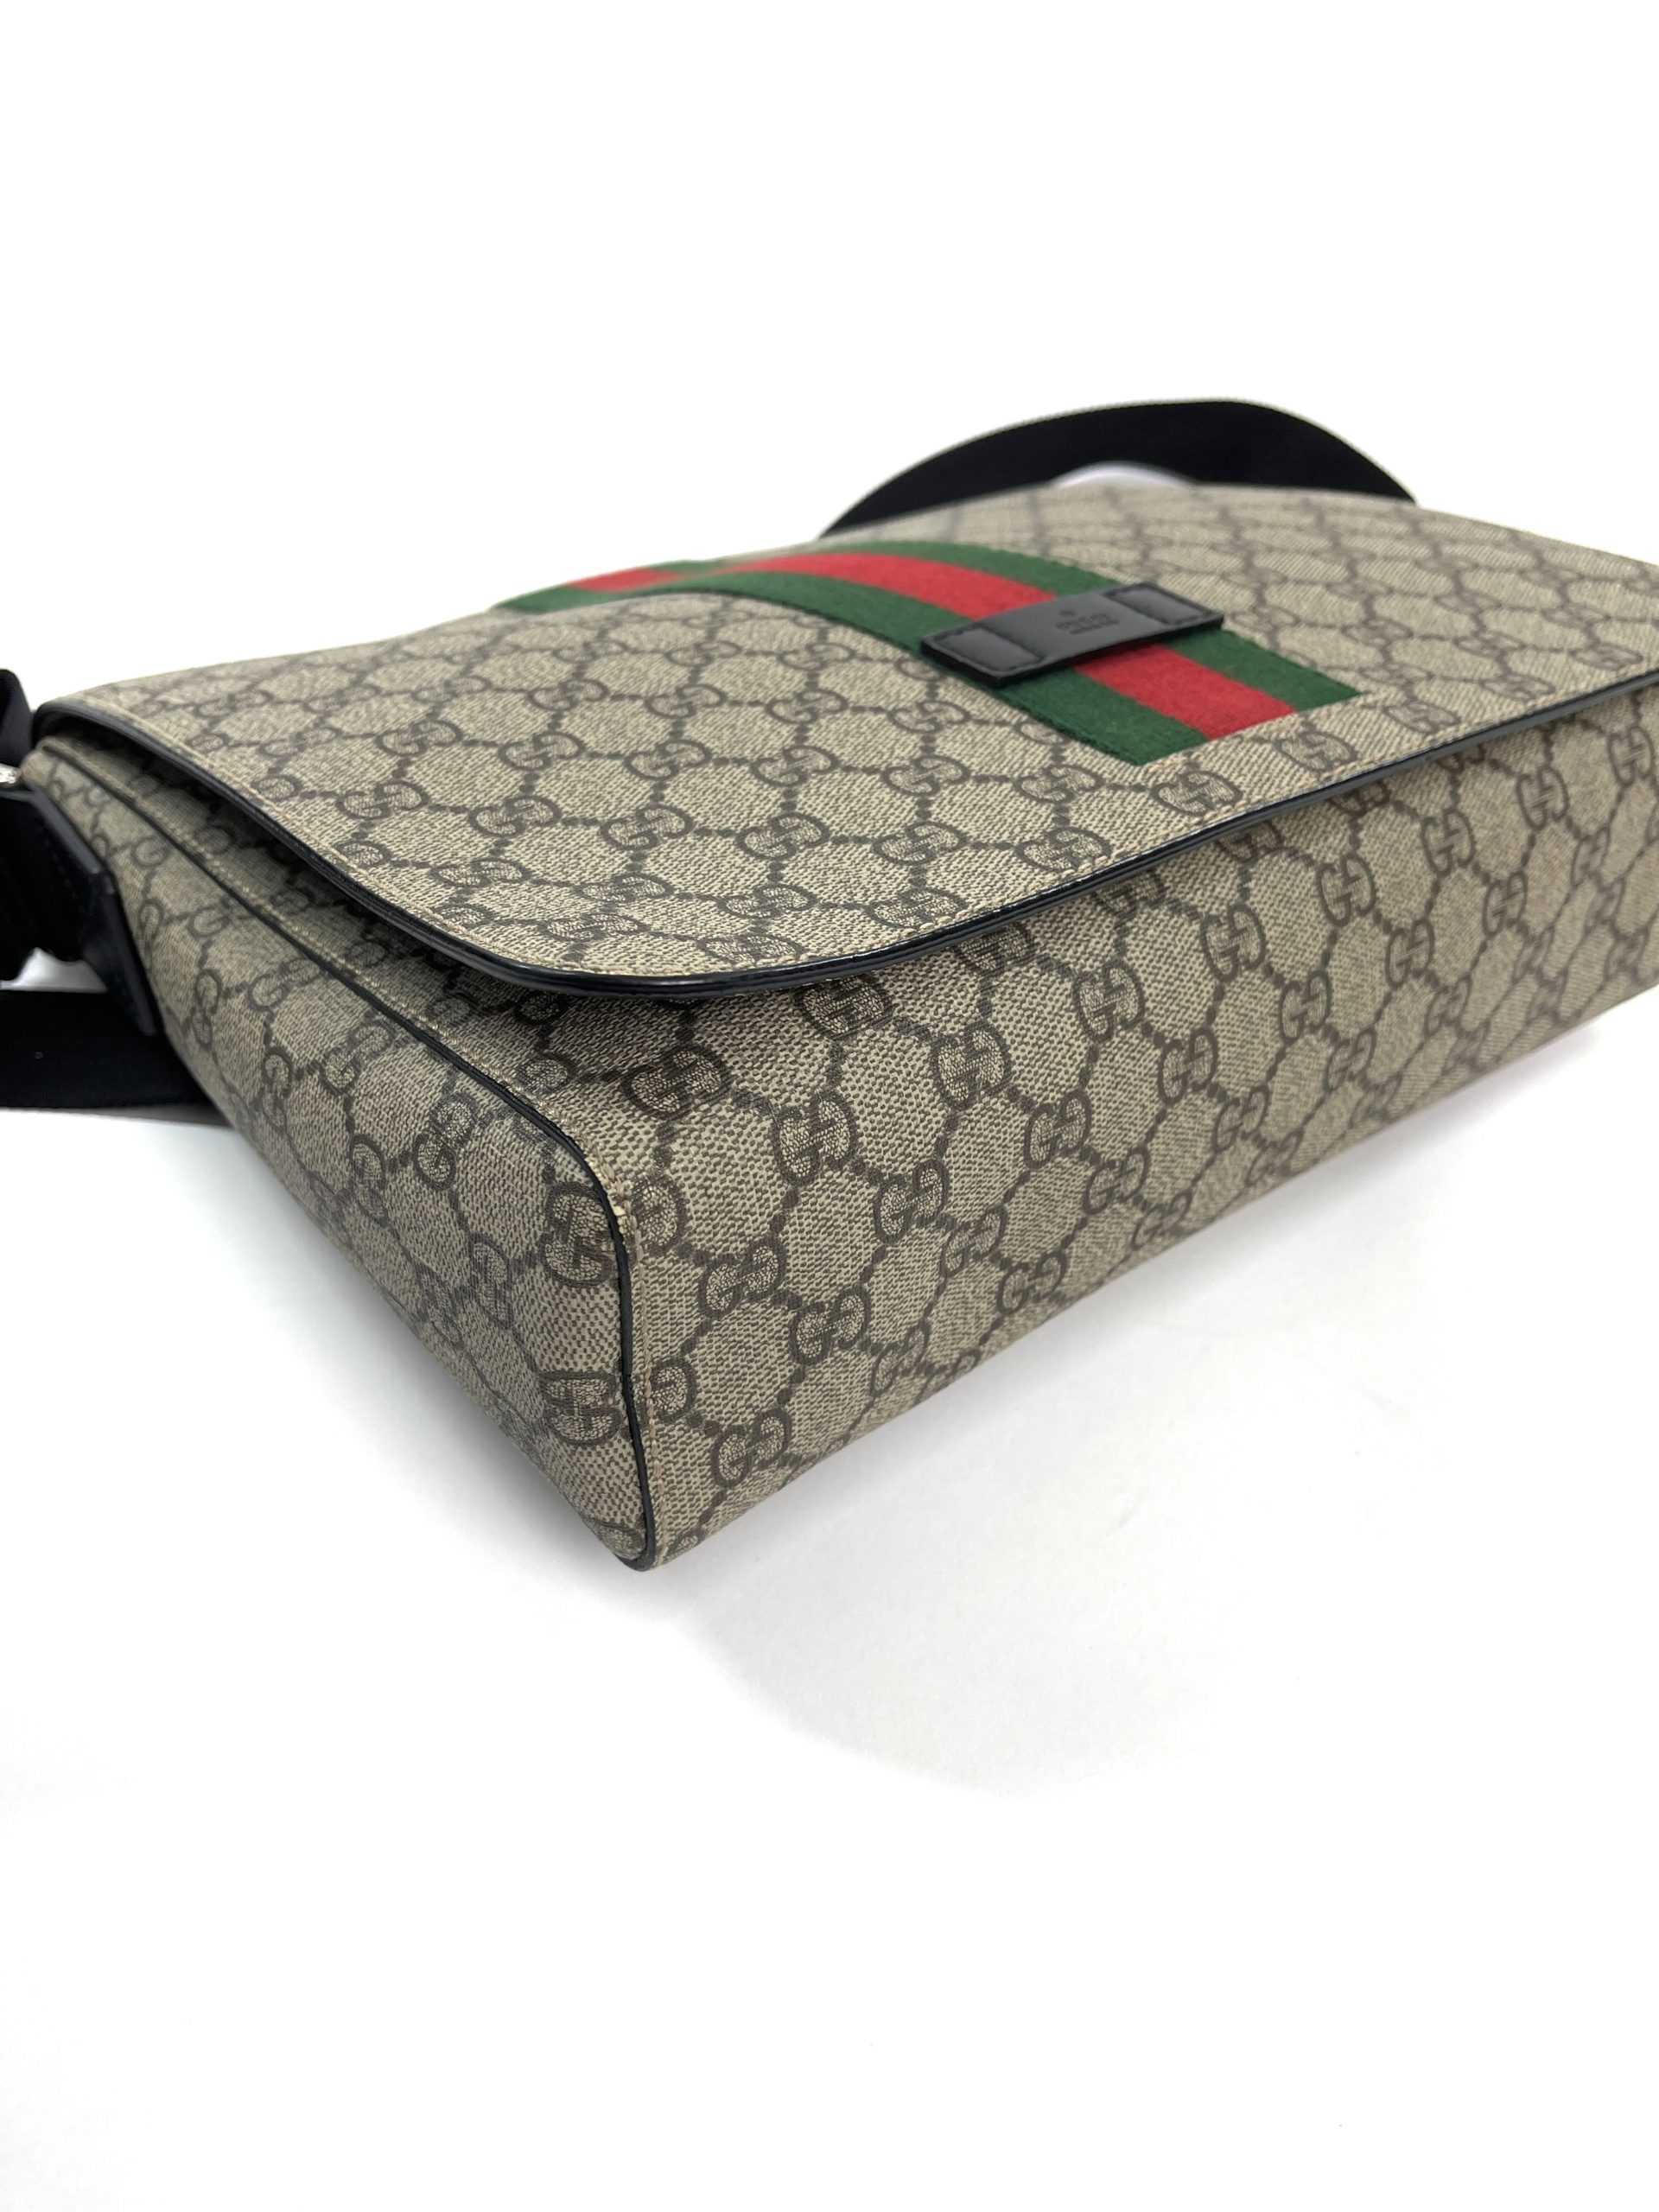 Gucci Supreme Web Messenger Bag - Luxe Du Jour